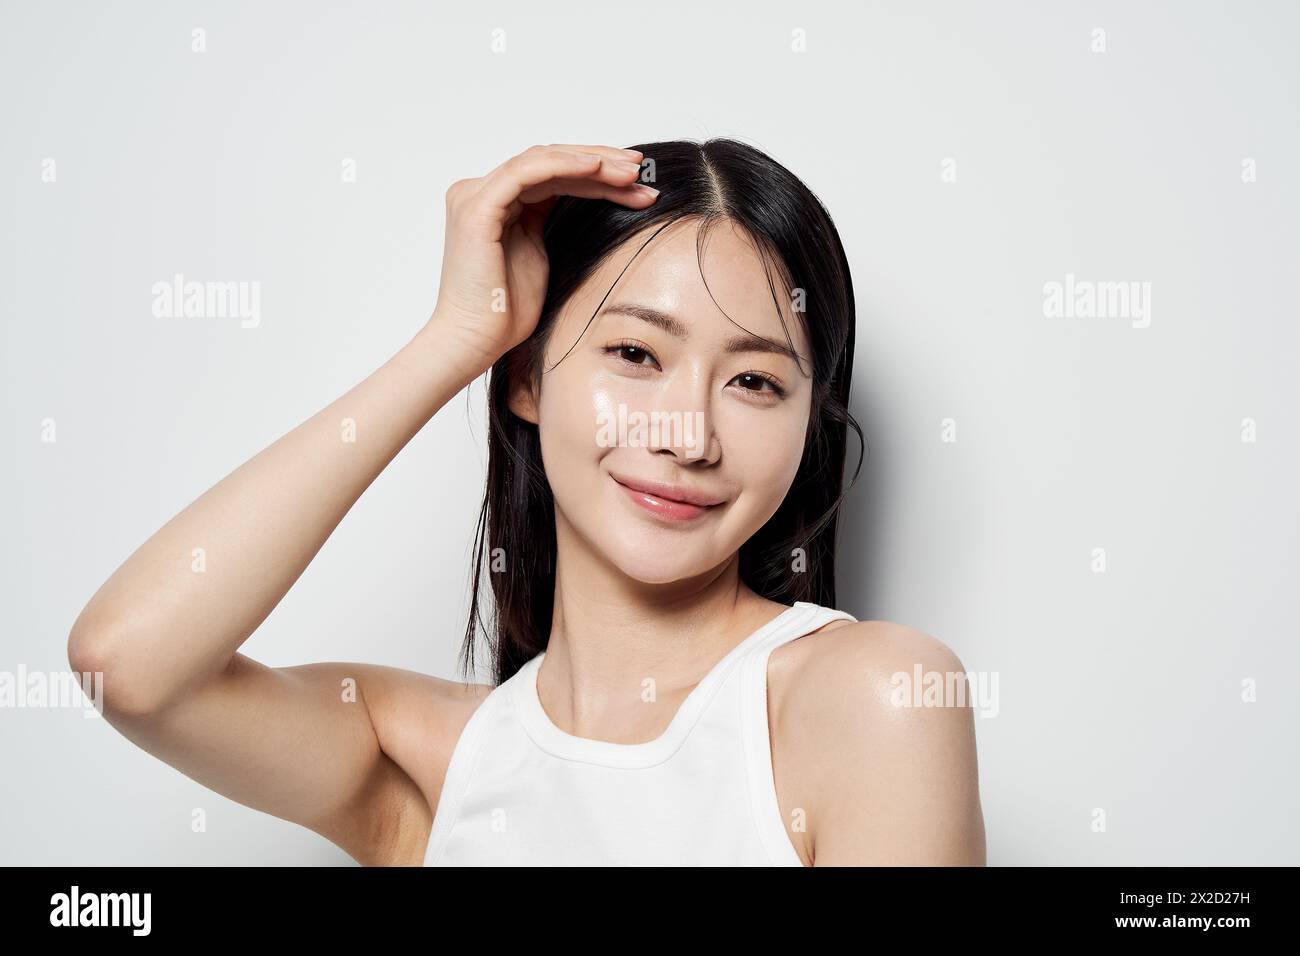 Donna asiatica che posa con la mano sulla testa su uno sfondo bianco Foto Stock